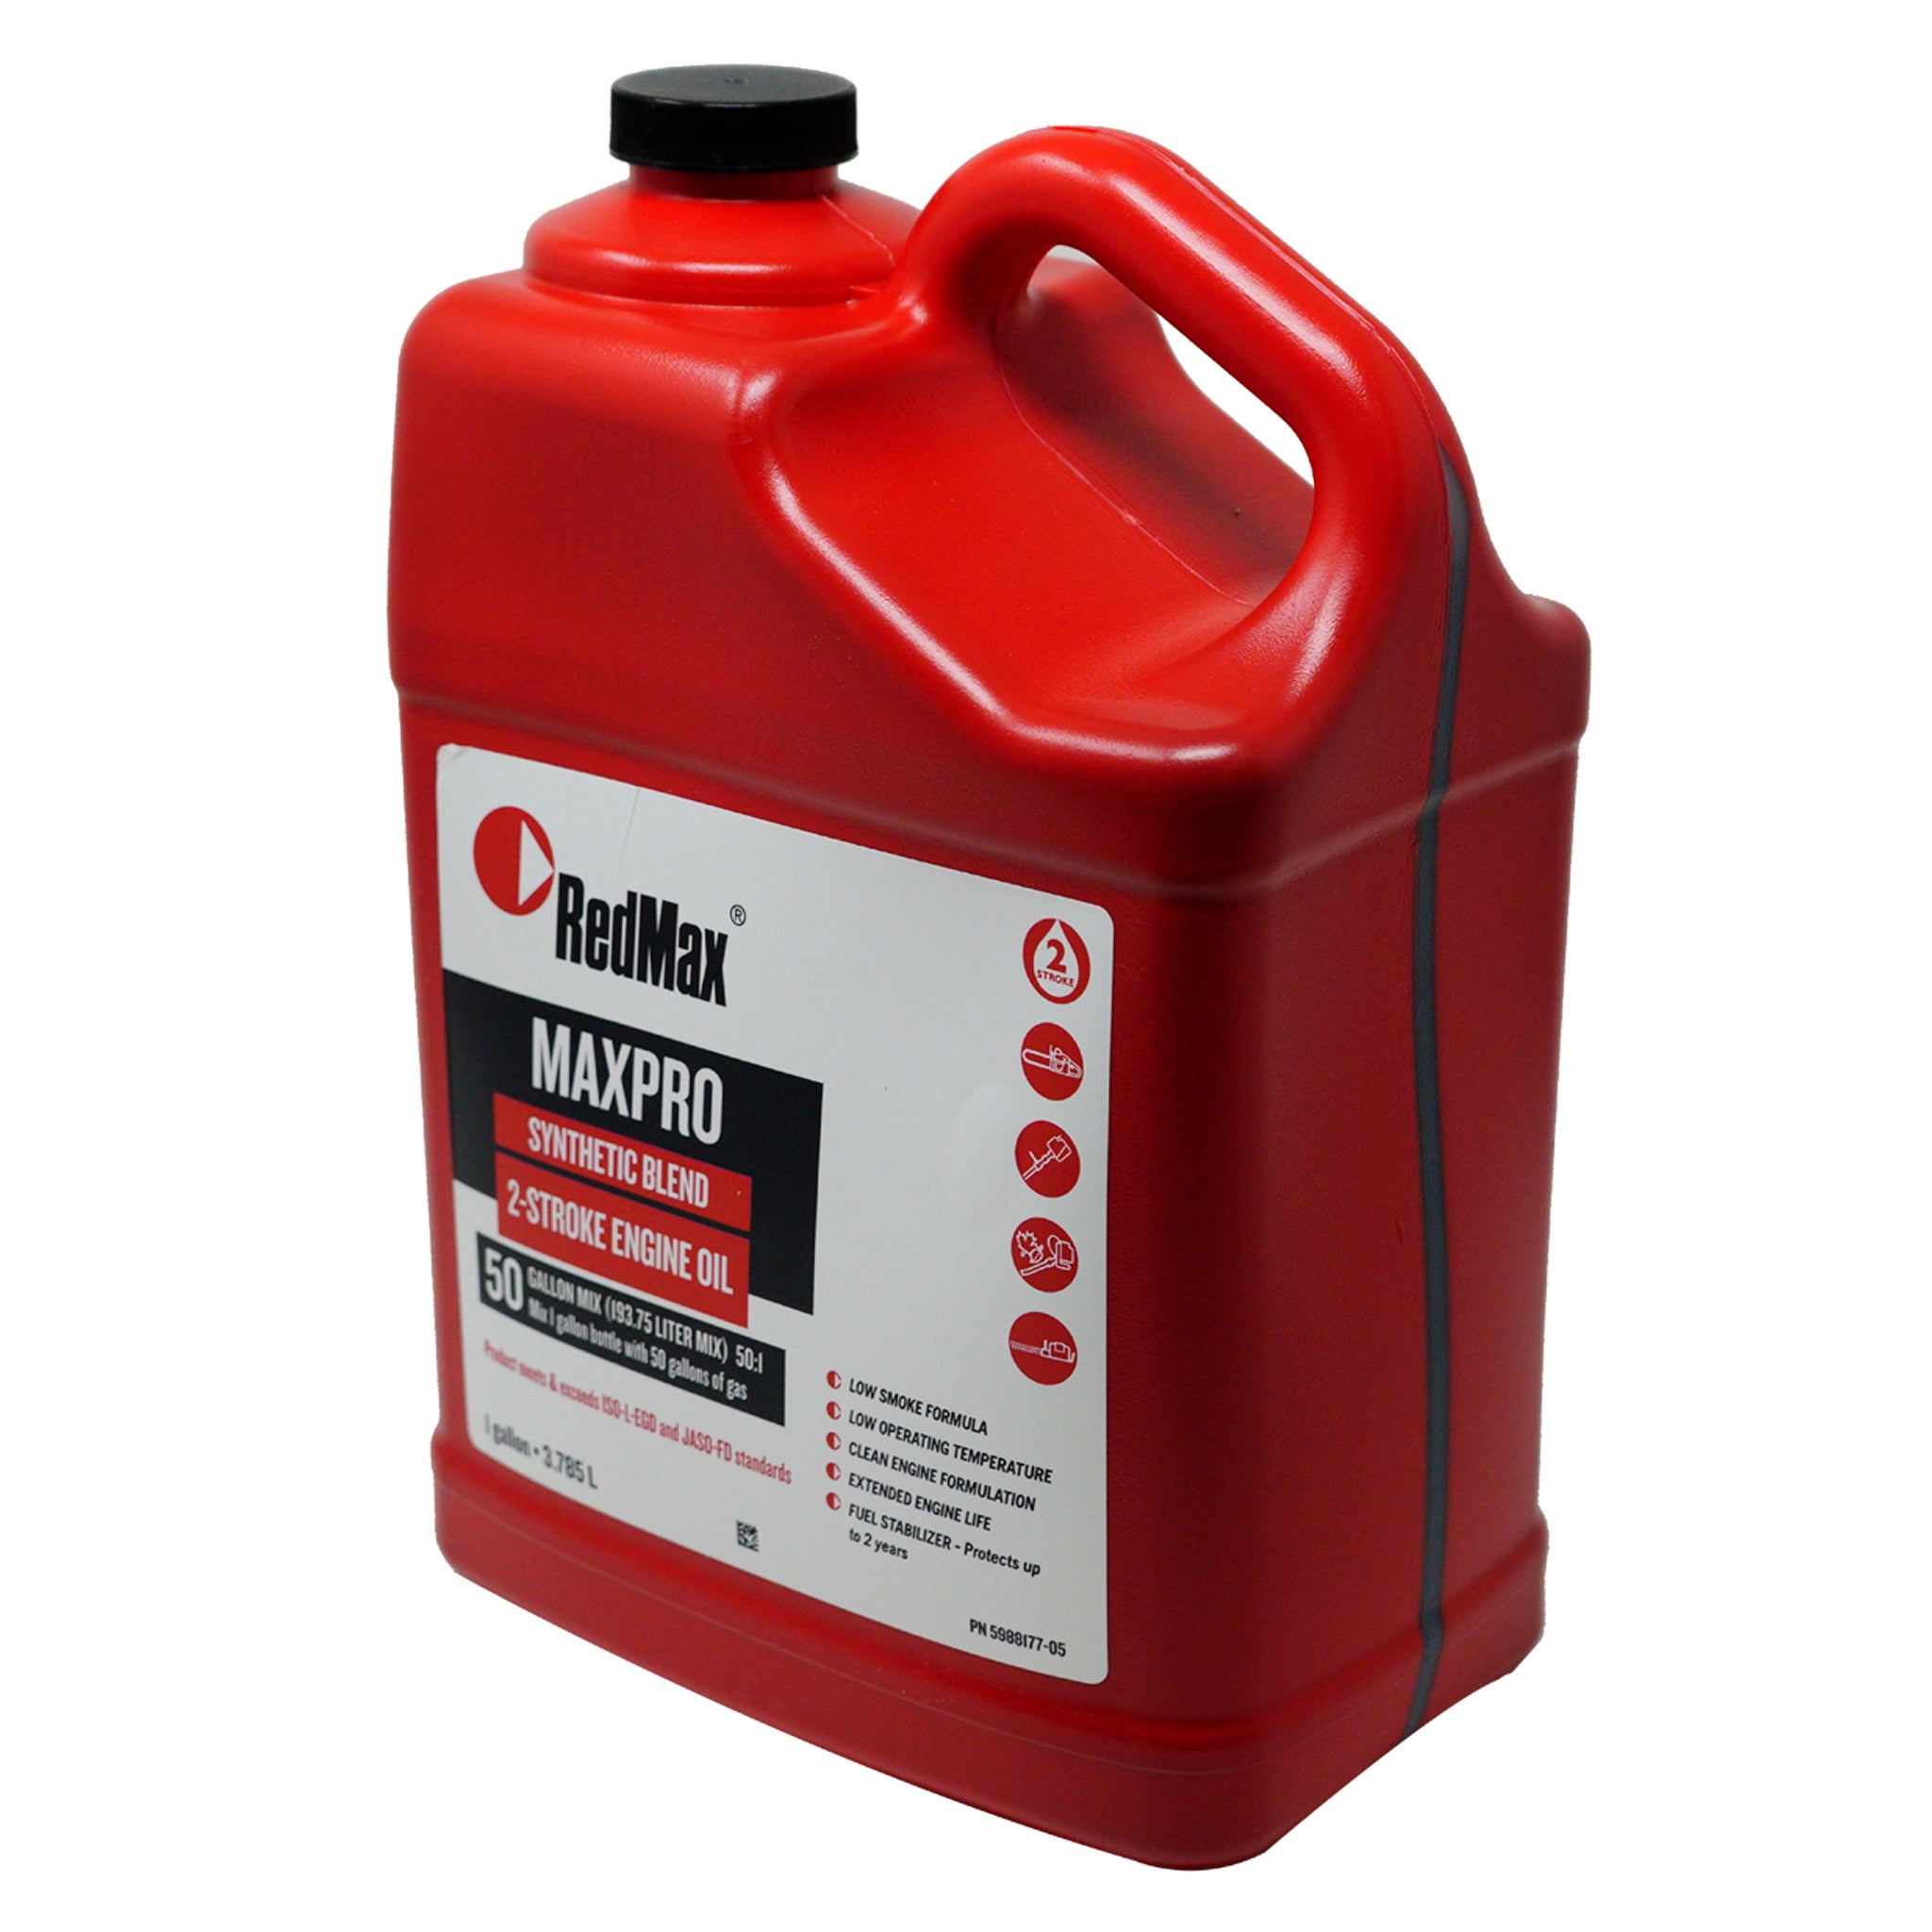 RedMax 598817705 MaxPro 2-Stroke Oil 50:1 Mix 1 Gallon